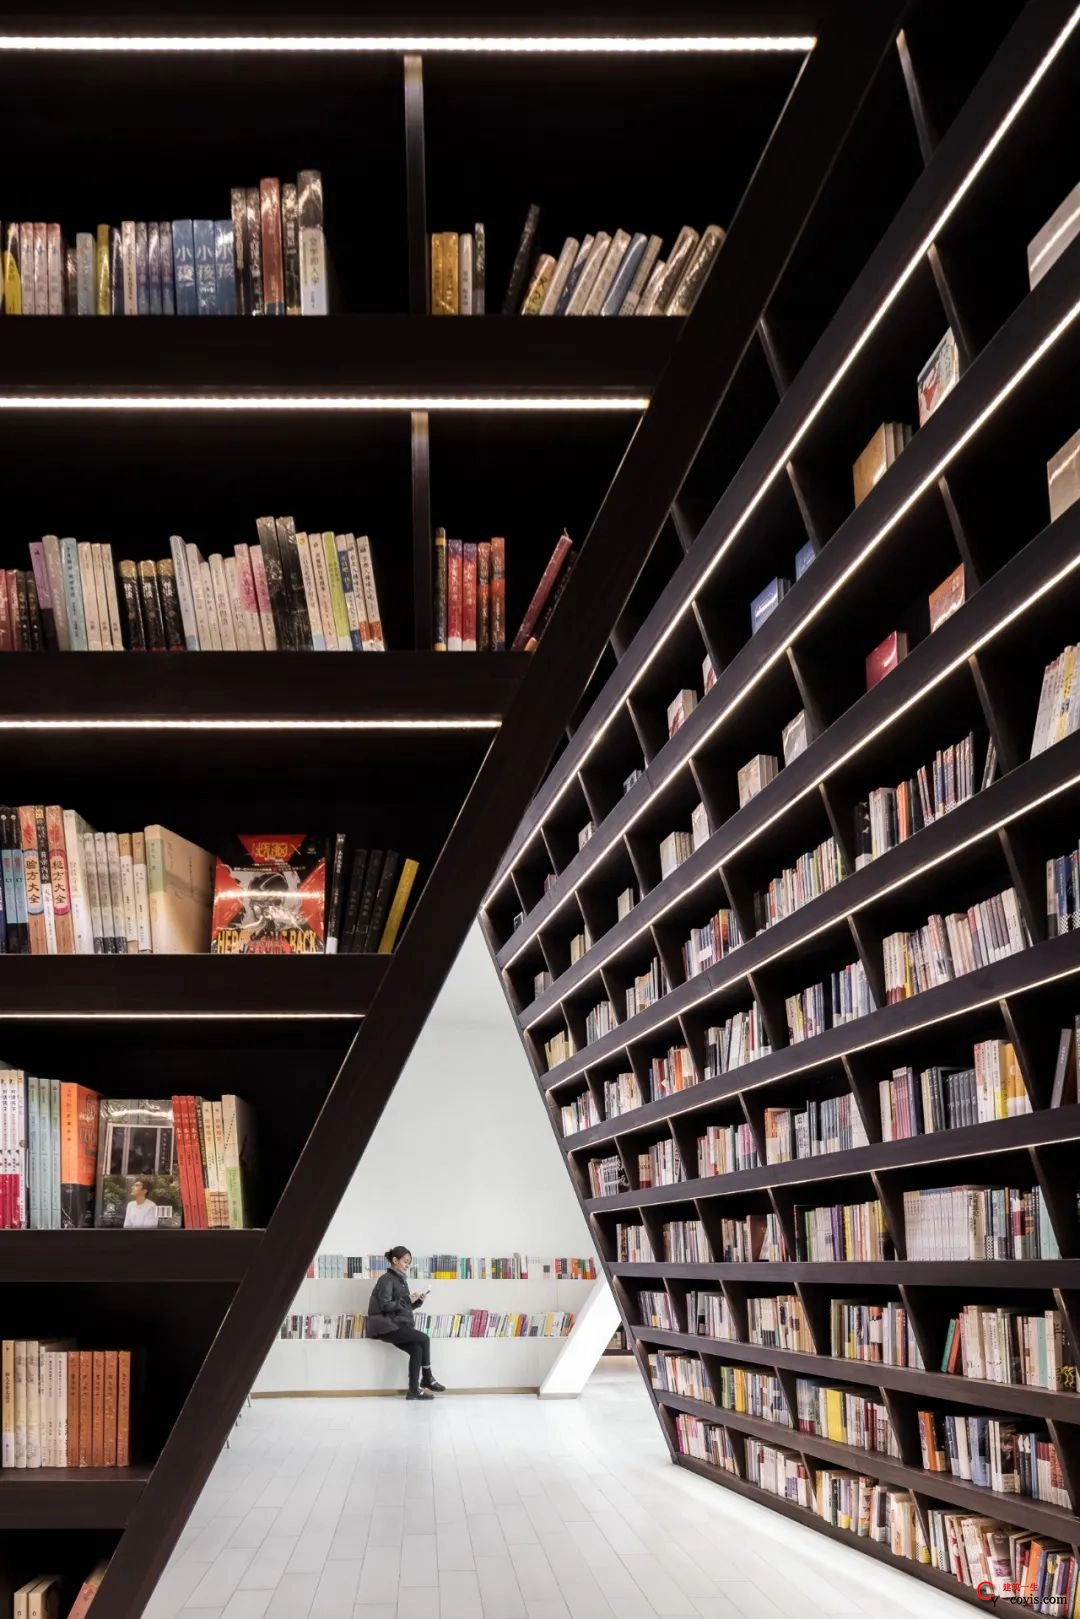 斐波影院X鐘書閣丨一家藏在書店里的電影院，打造出了文藝愛好者的天堂 / 唯想國際